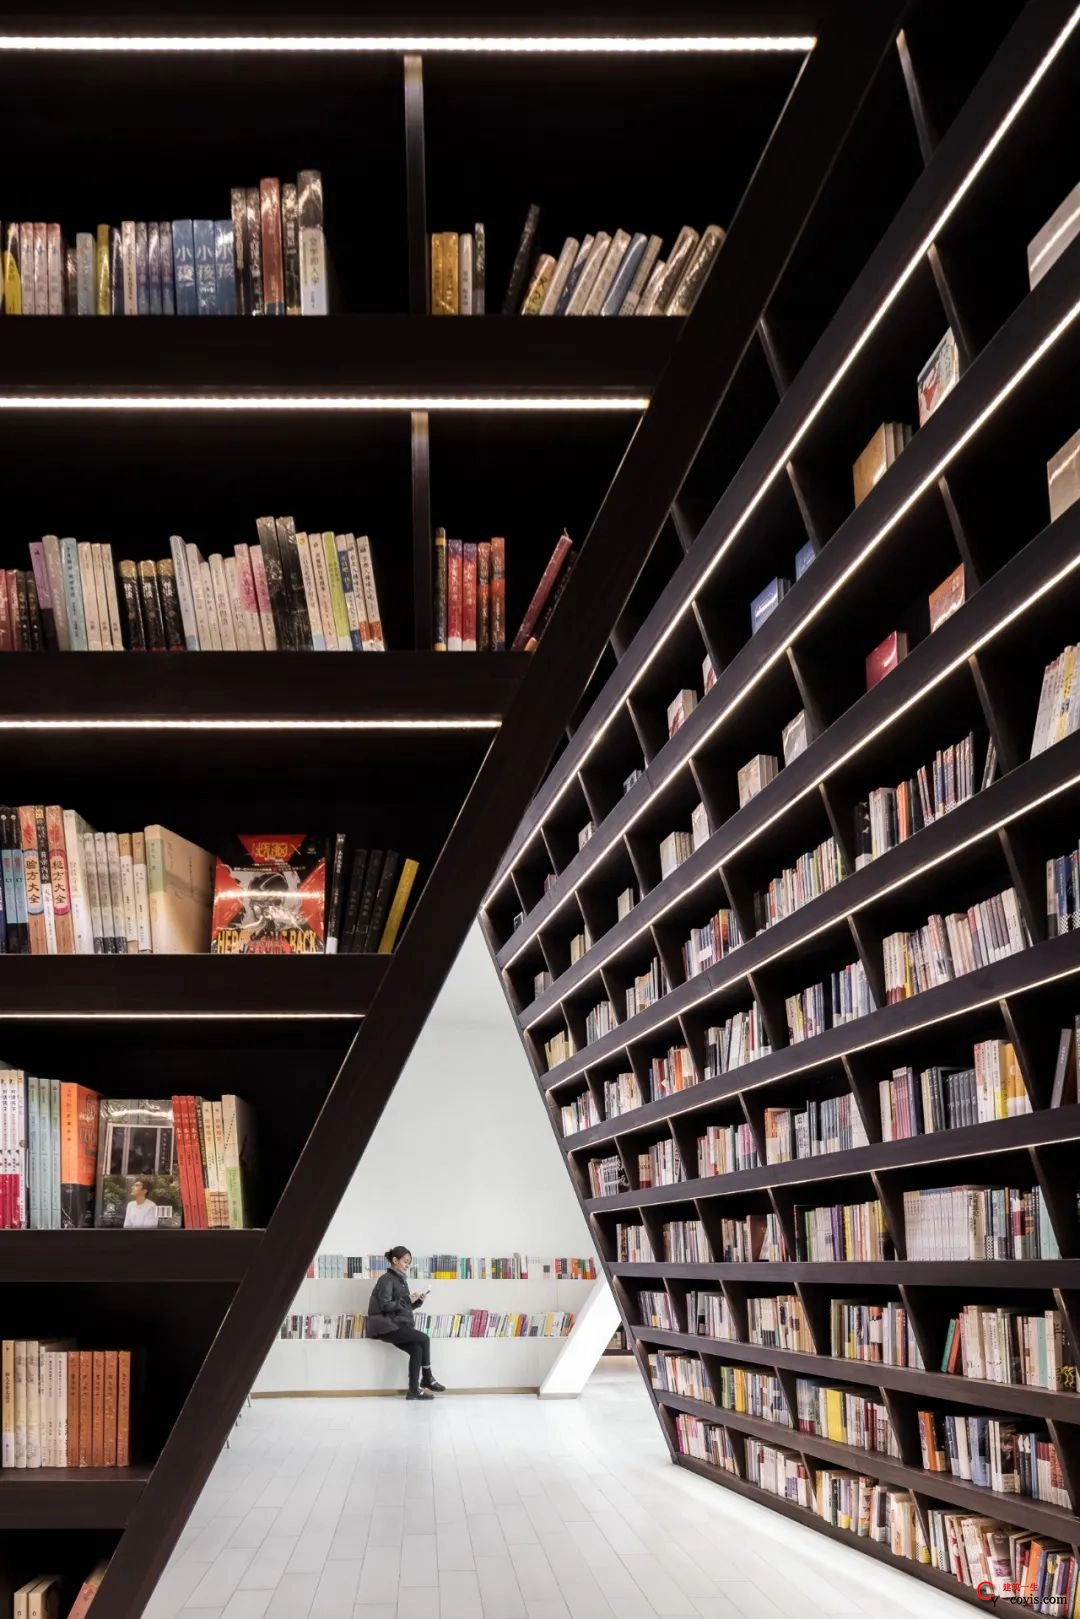 斐波影院X鐘書閣丨一家藏在書店里的電影院，打造出了文藝愛好者的天堂 / 唯想國際